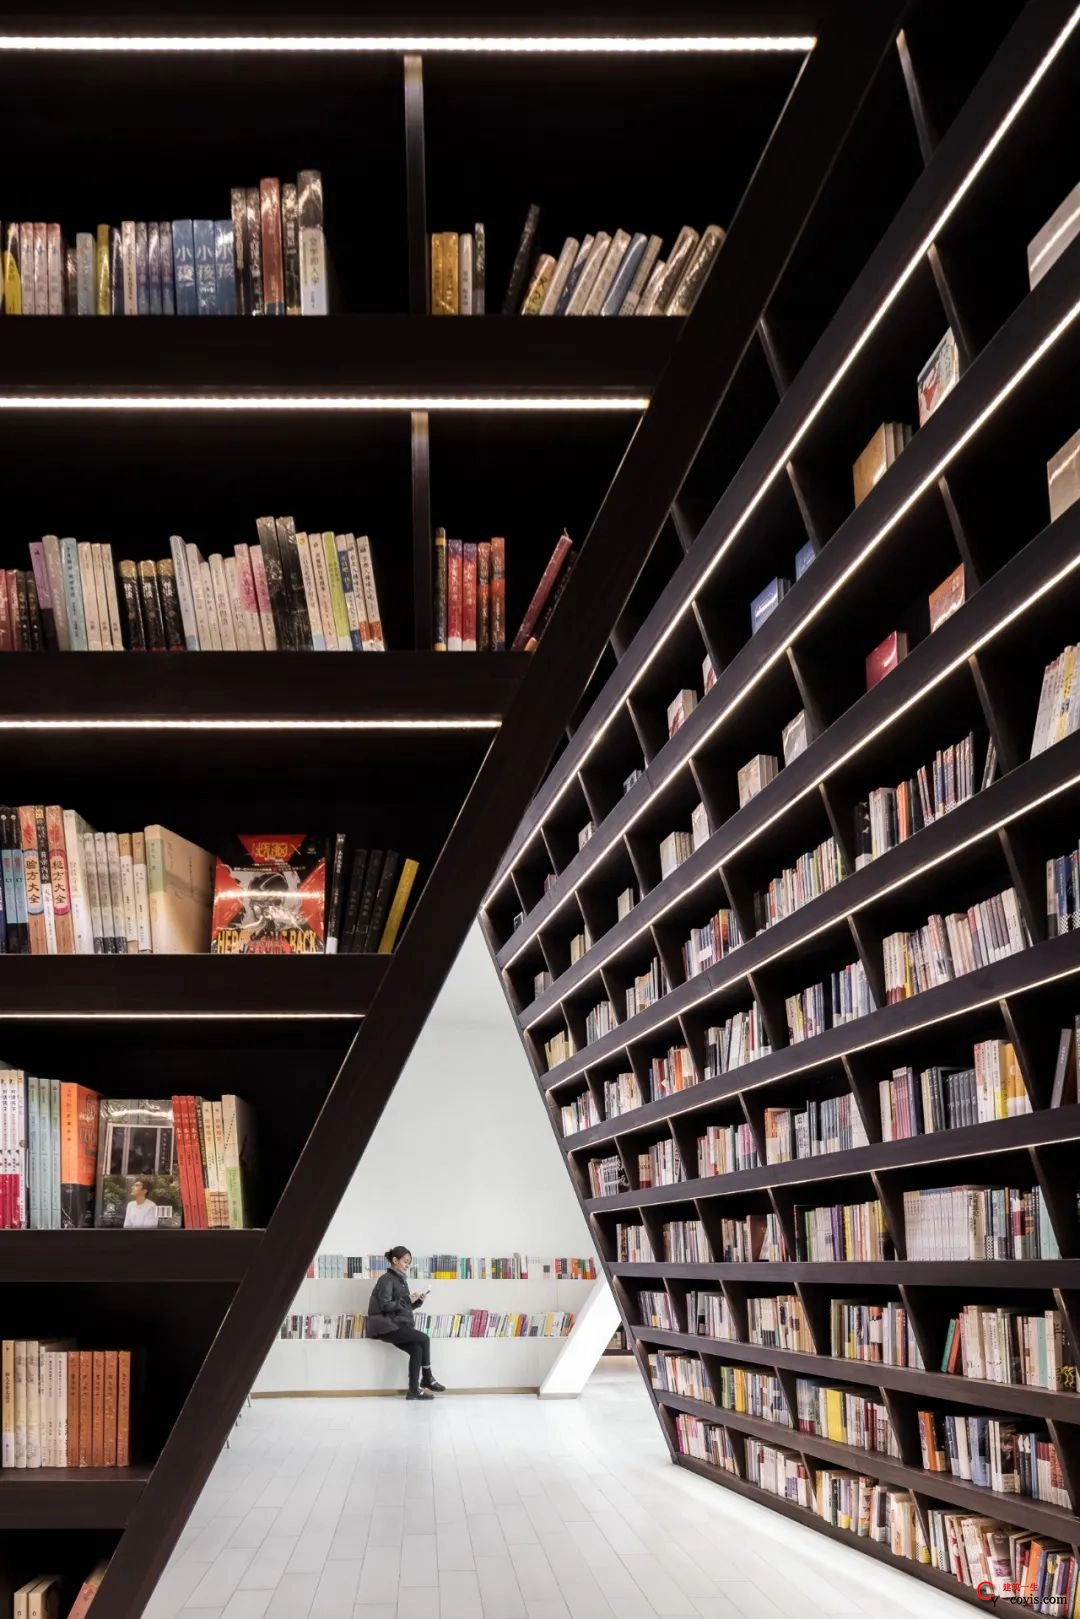 斐波影院X鐘書閣丨一家藏在書店里的電影院，打造出了文藝愛好者的天堂 / 唯想國際